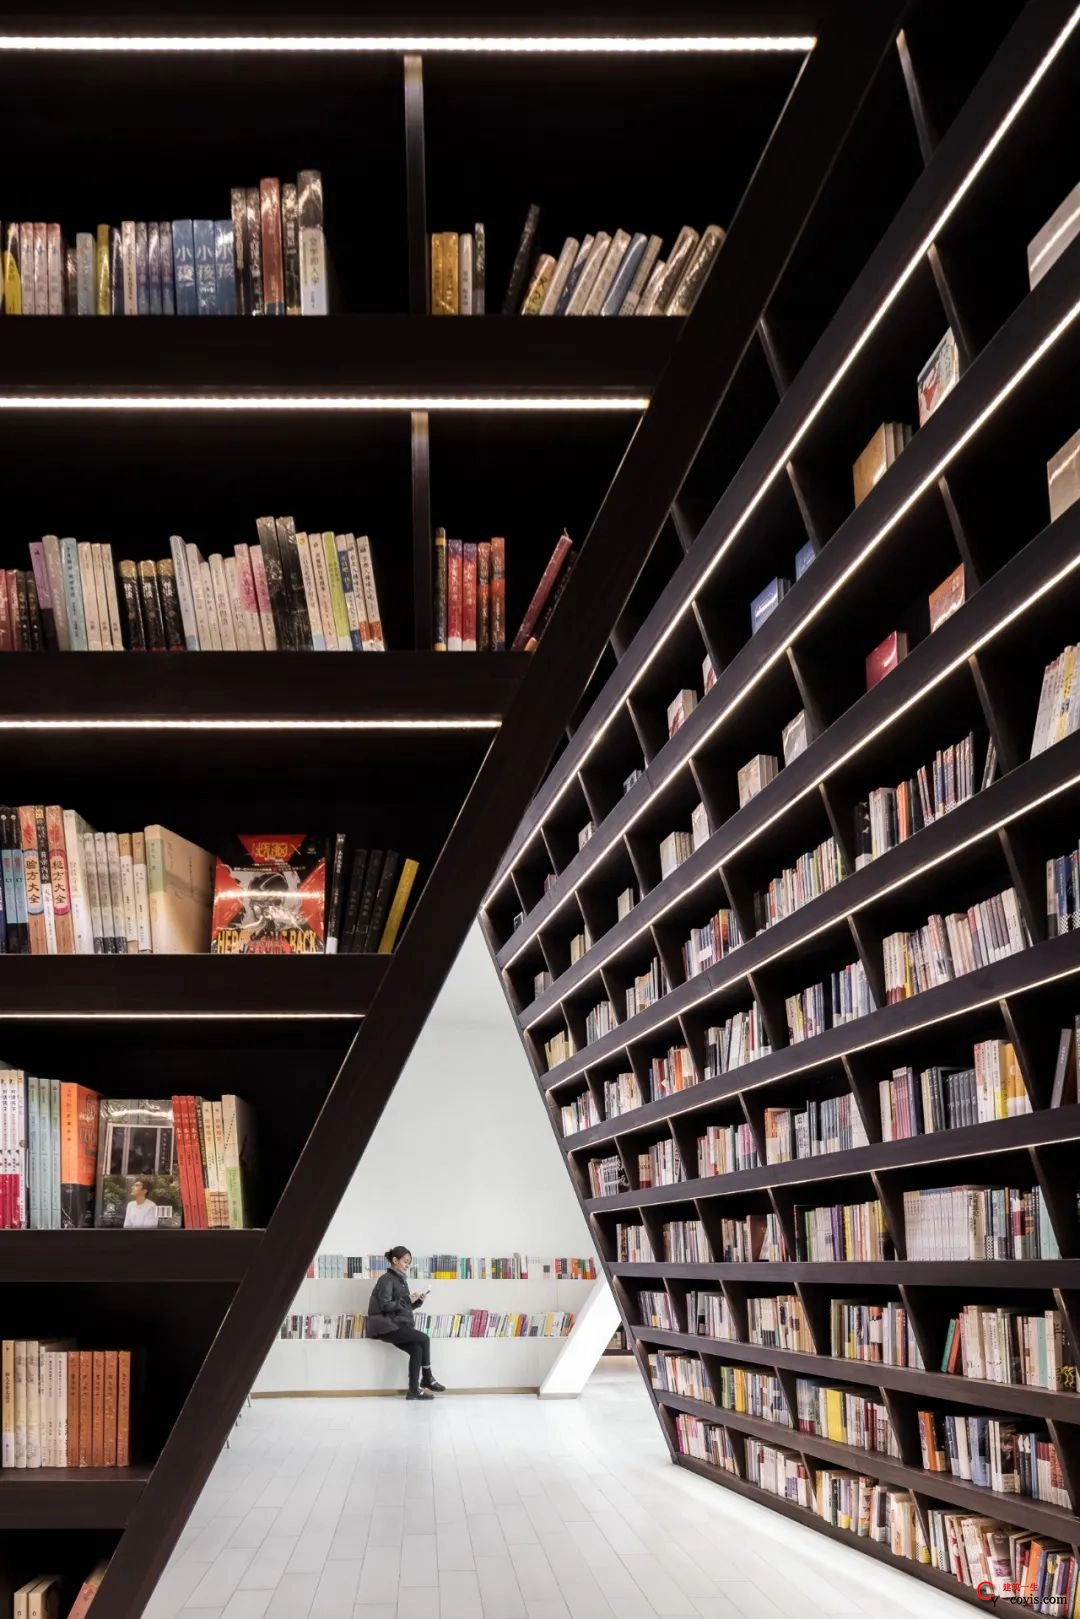 斐波影院X鐘書閣丨一家藏在書店里的電影院，打造出了文藝愛好者的天堂 / 唯想國際